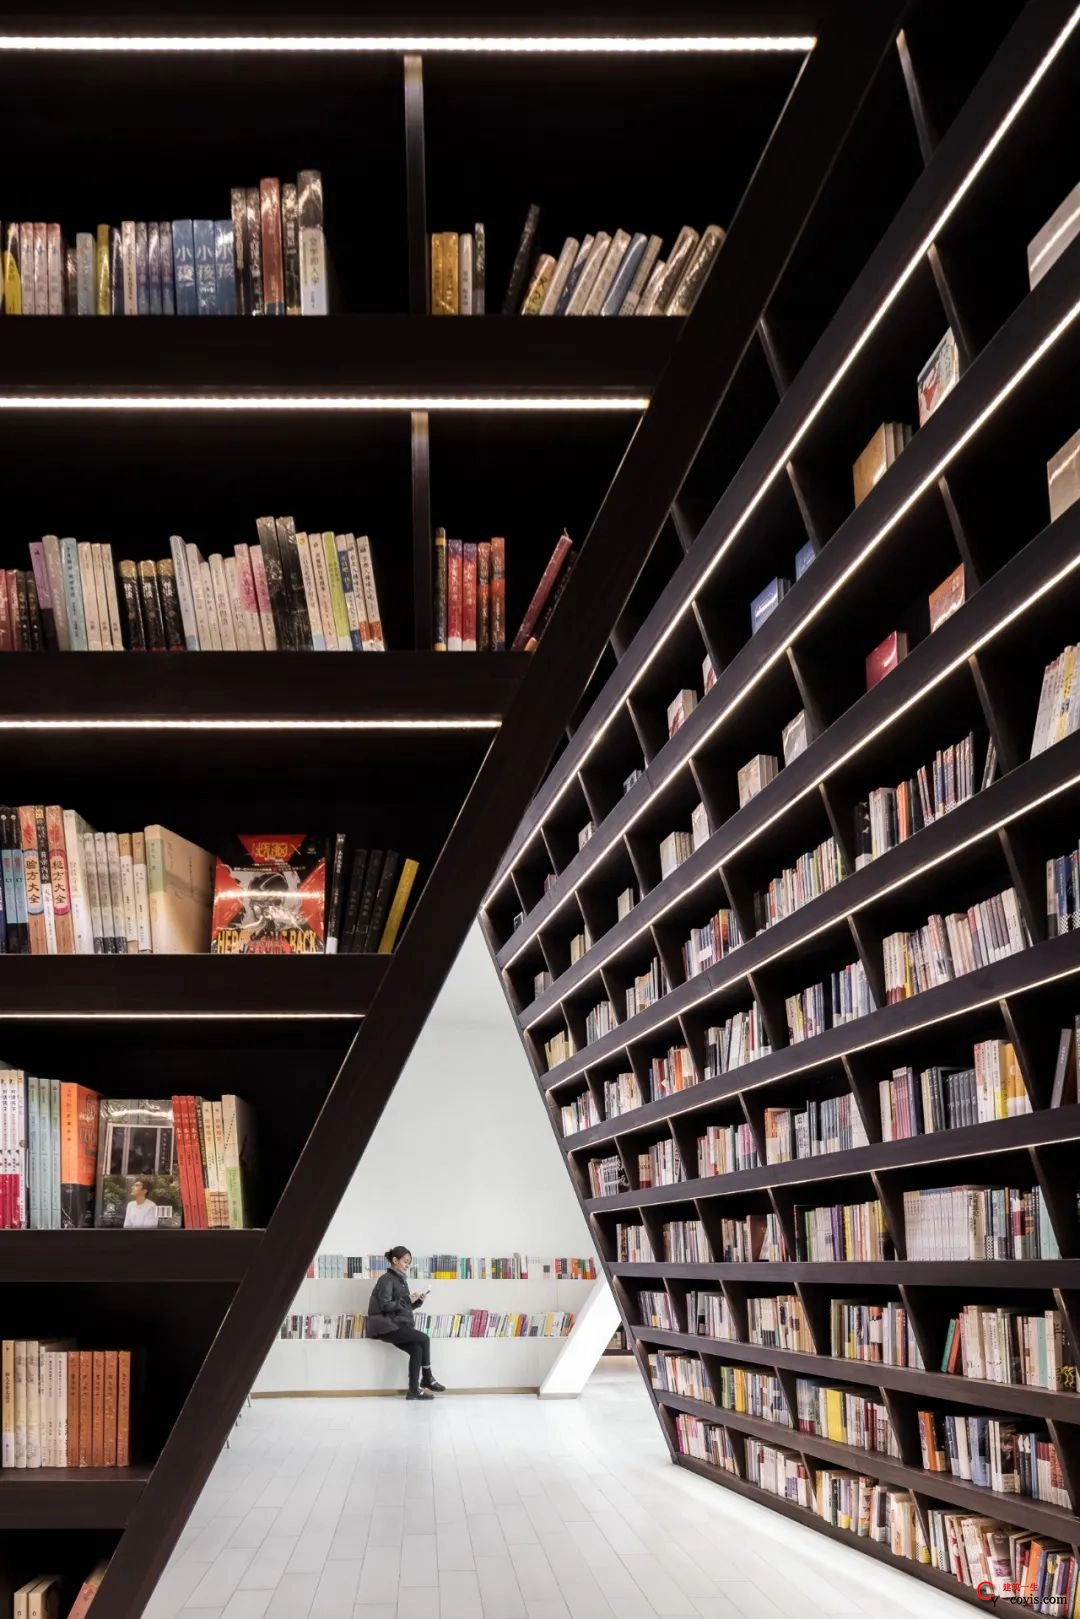 斐波影院X鐘書閣丨一家藏在書店里的電影院，打造出了文藝愛好者的天堂 / 唯想國際